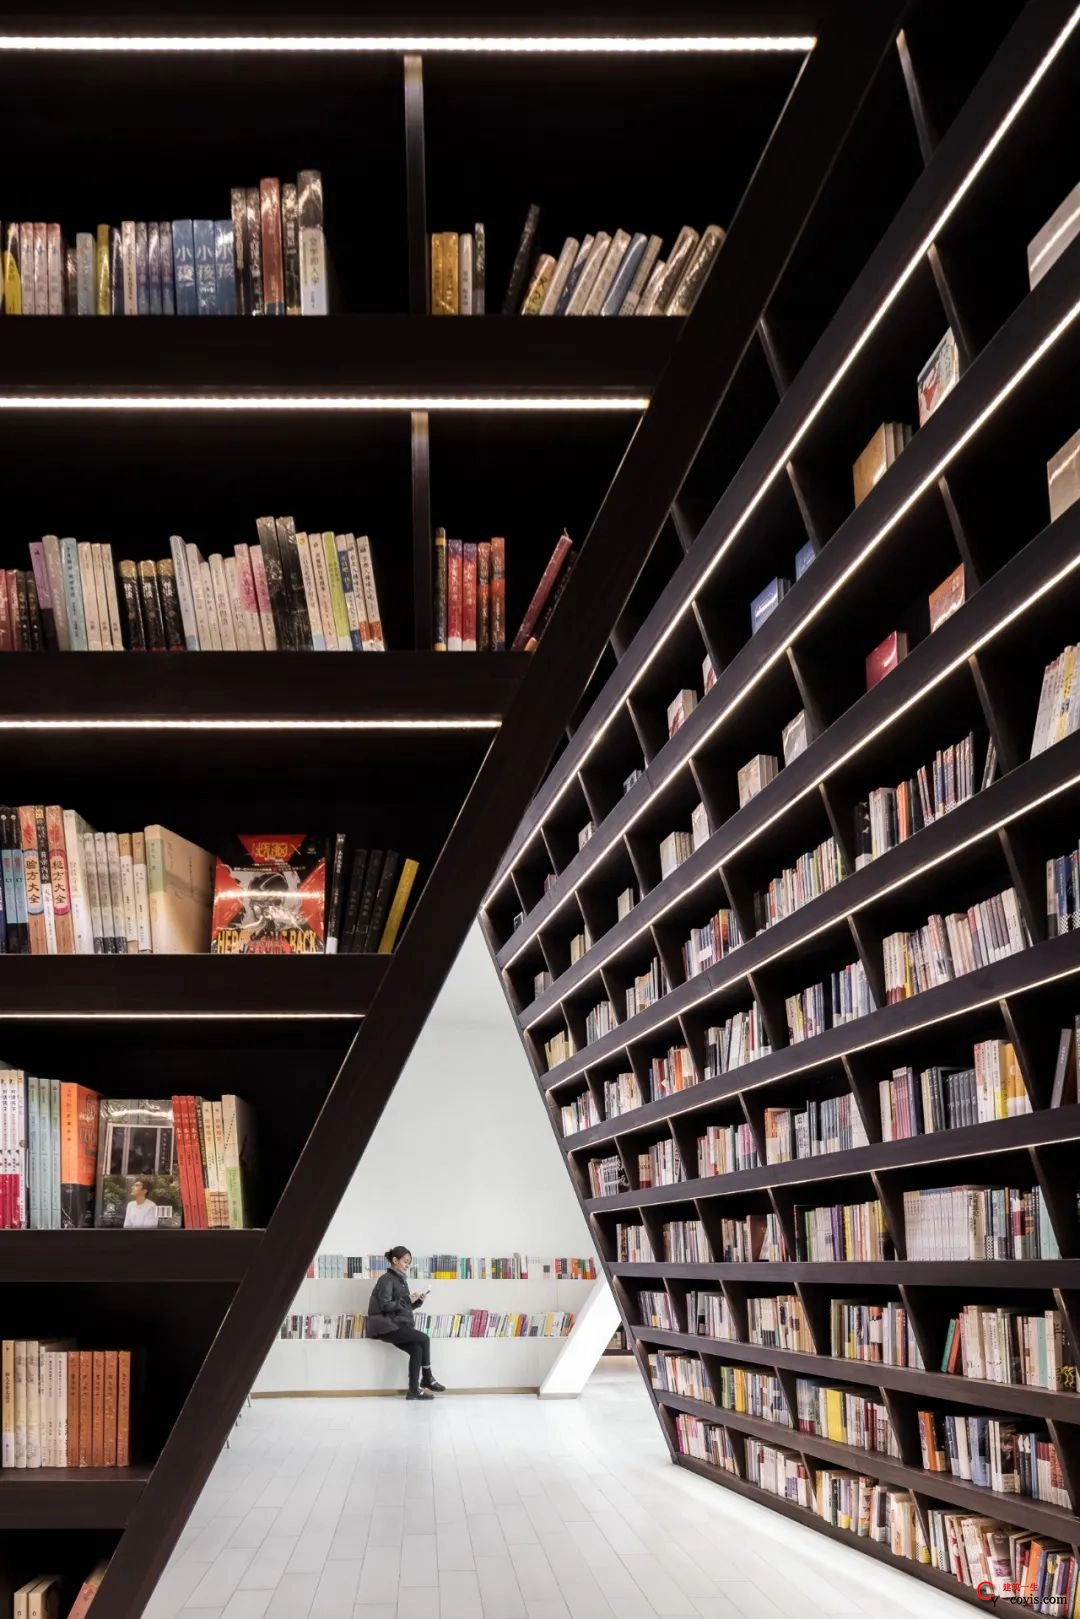 斐波影院X鐘書閣丨一家藏在書店里的電影院，打造出了文藝愛好者的天堂 / 唯想國際